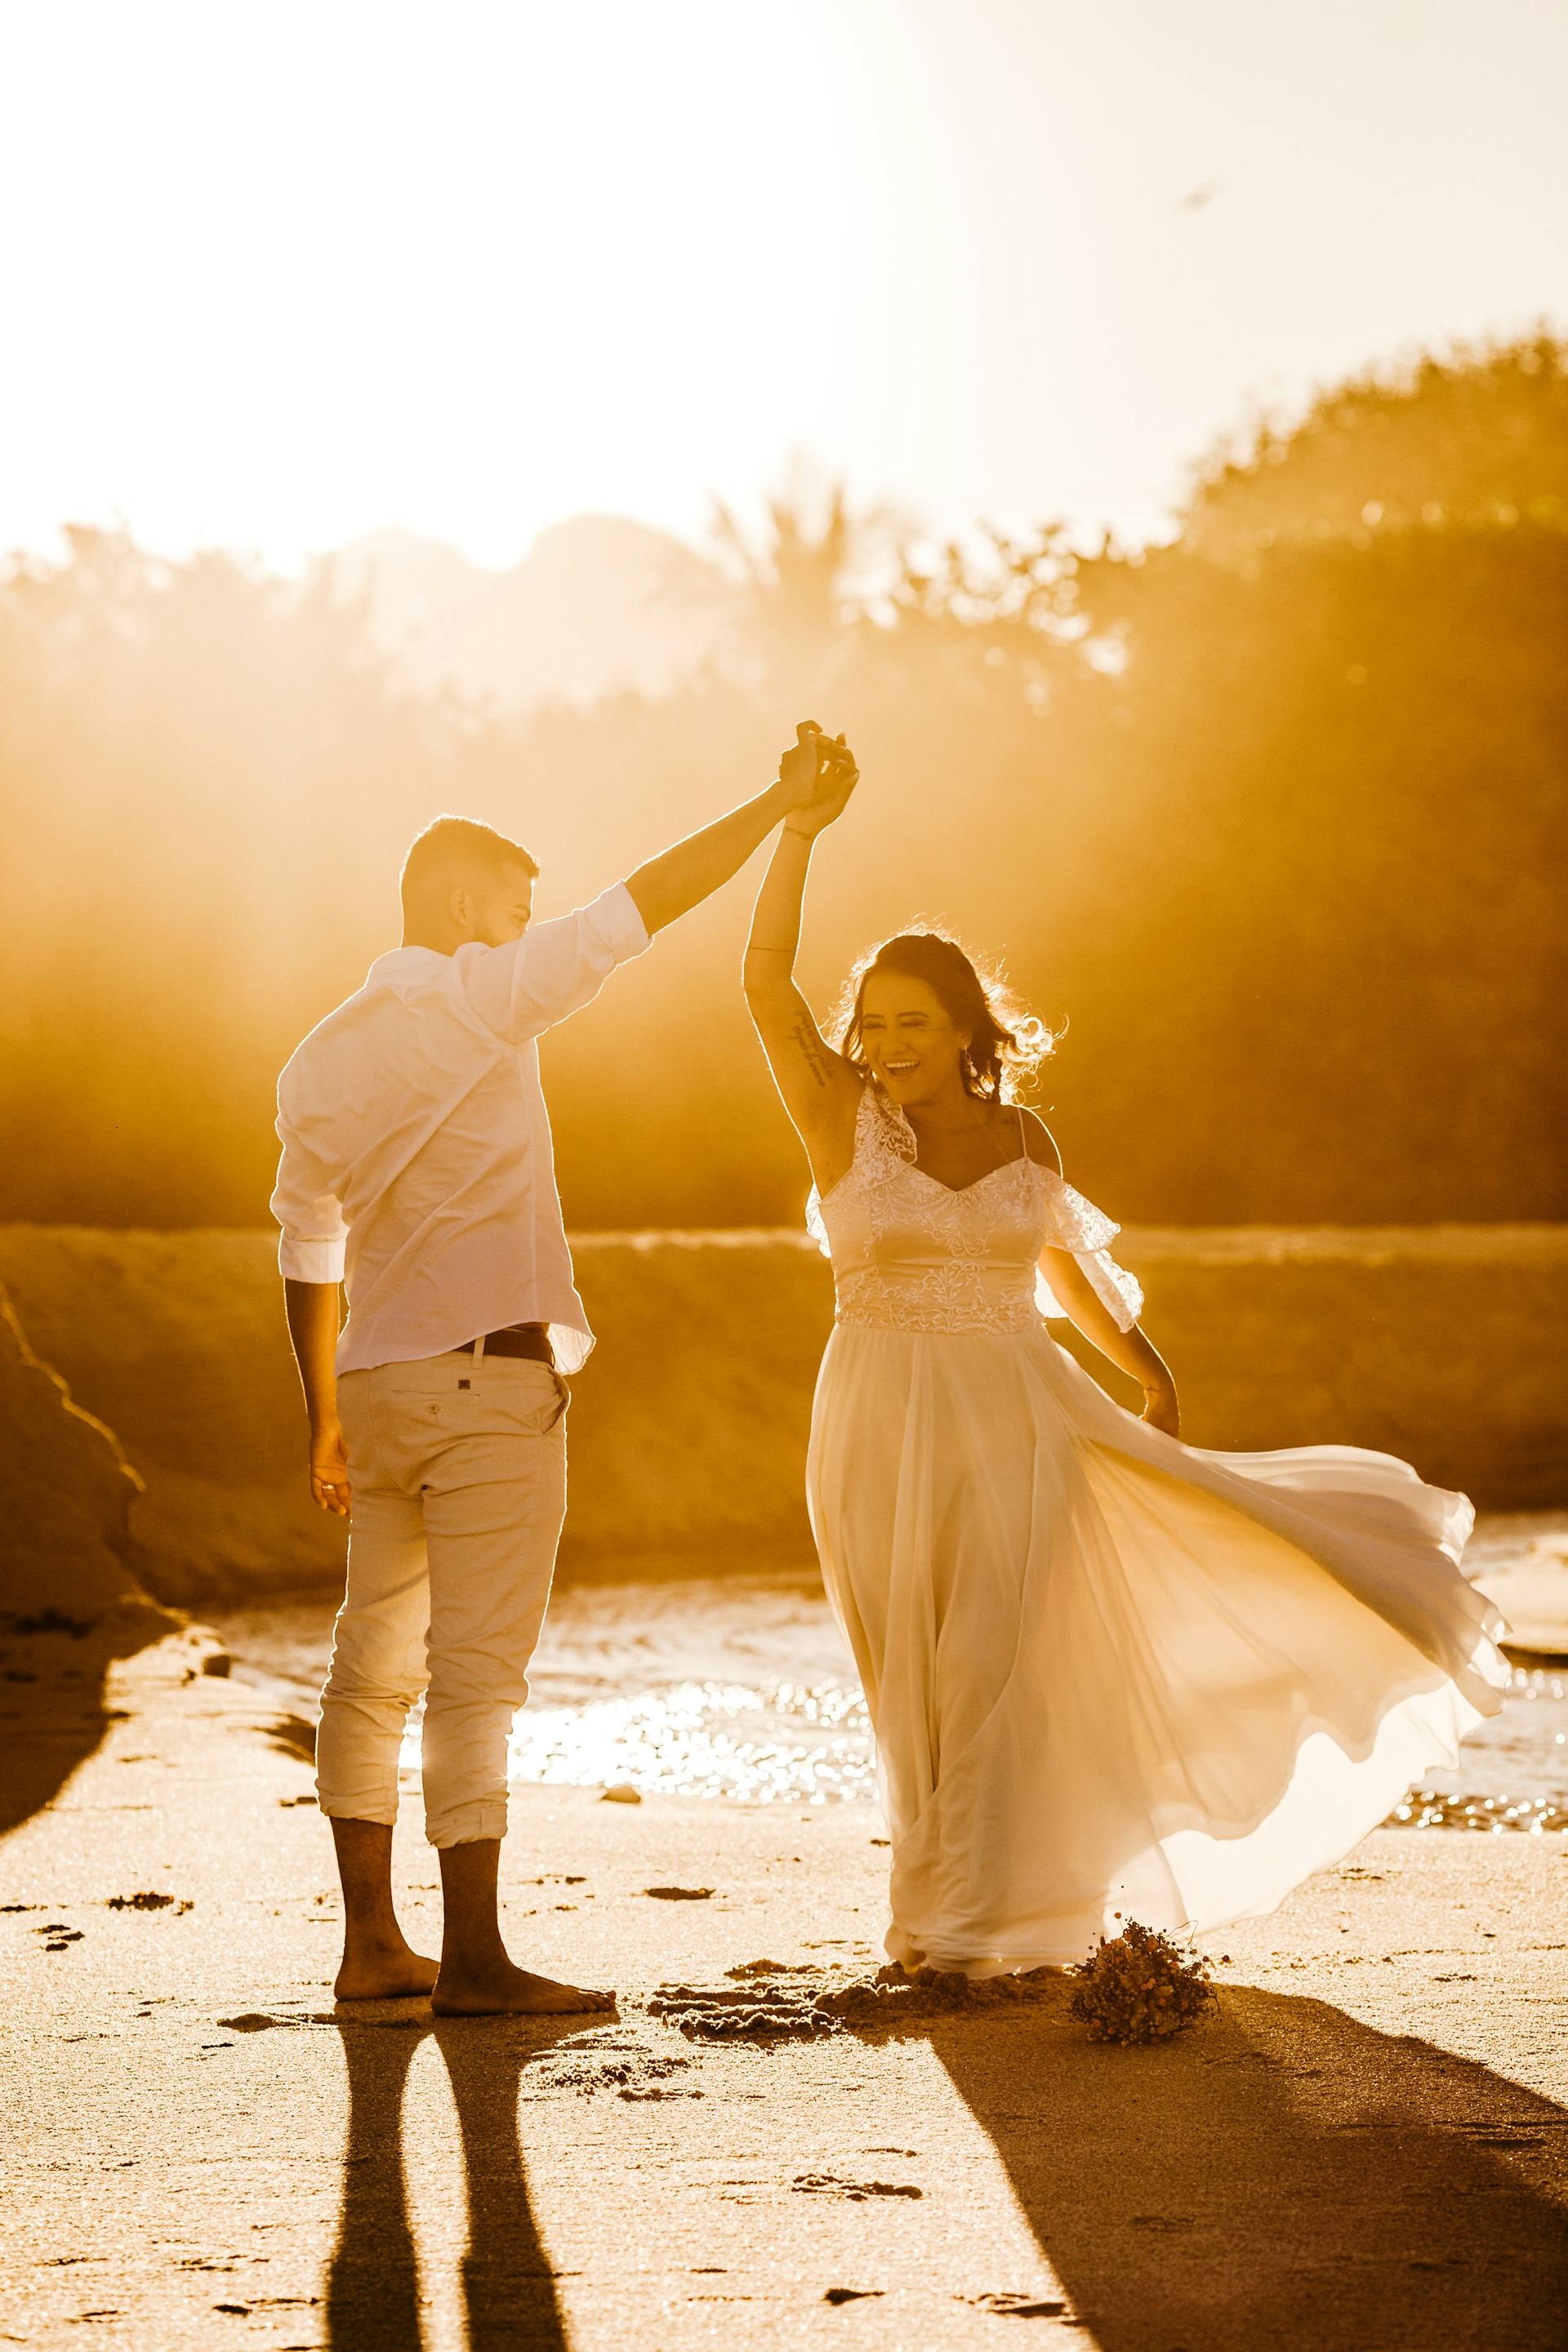 Una pareja de recién casados en la playa | Fuente: Pexels